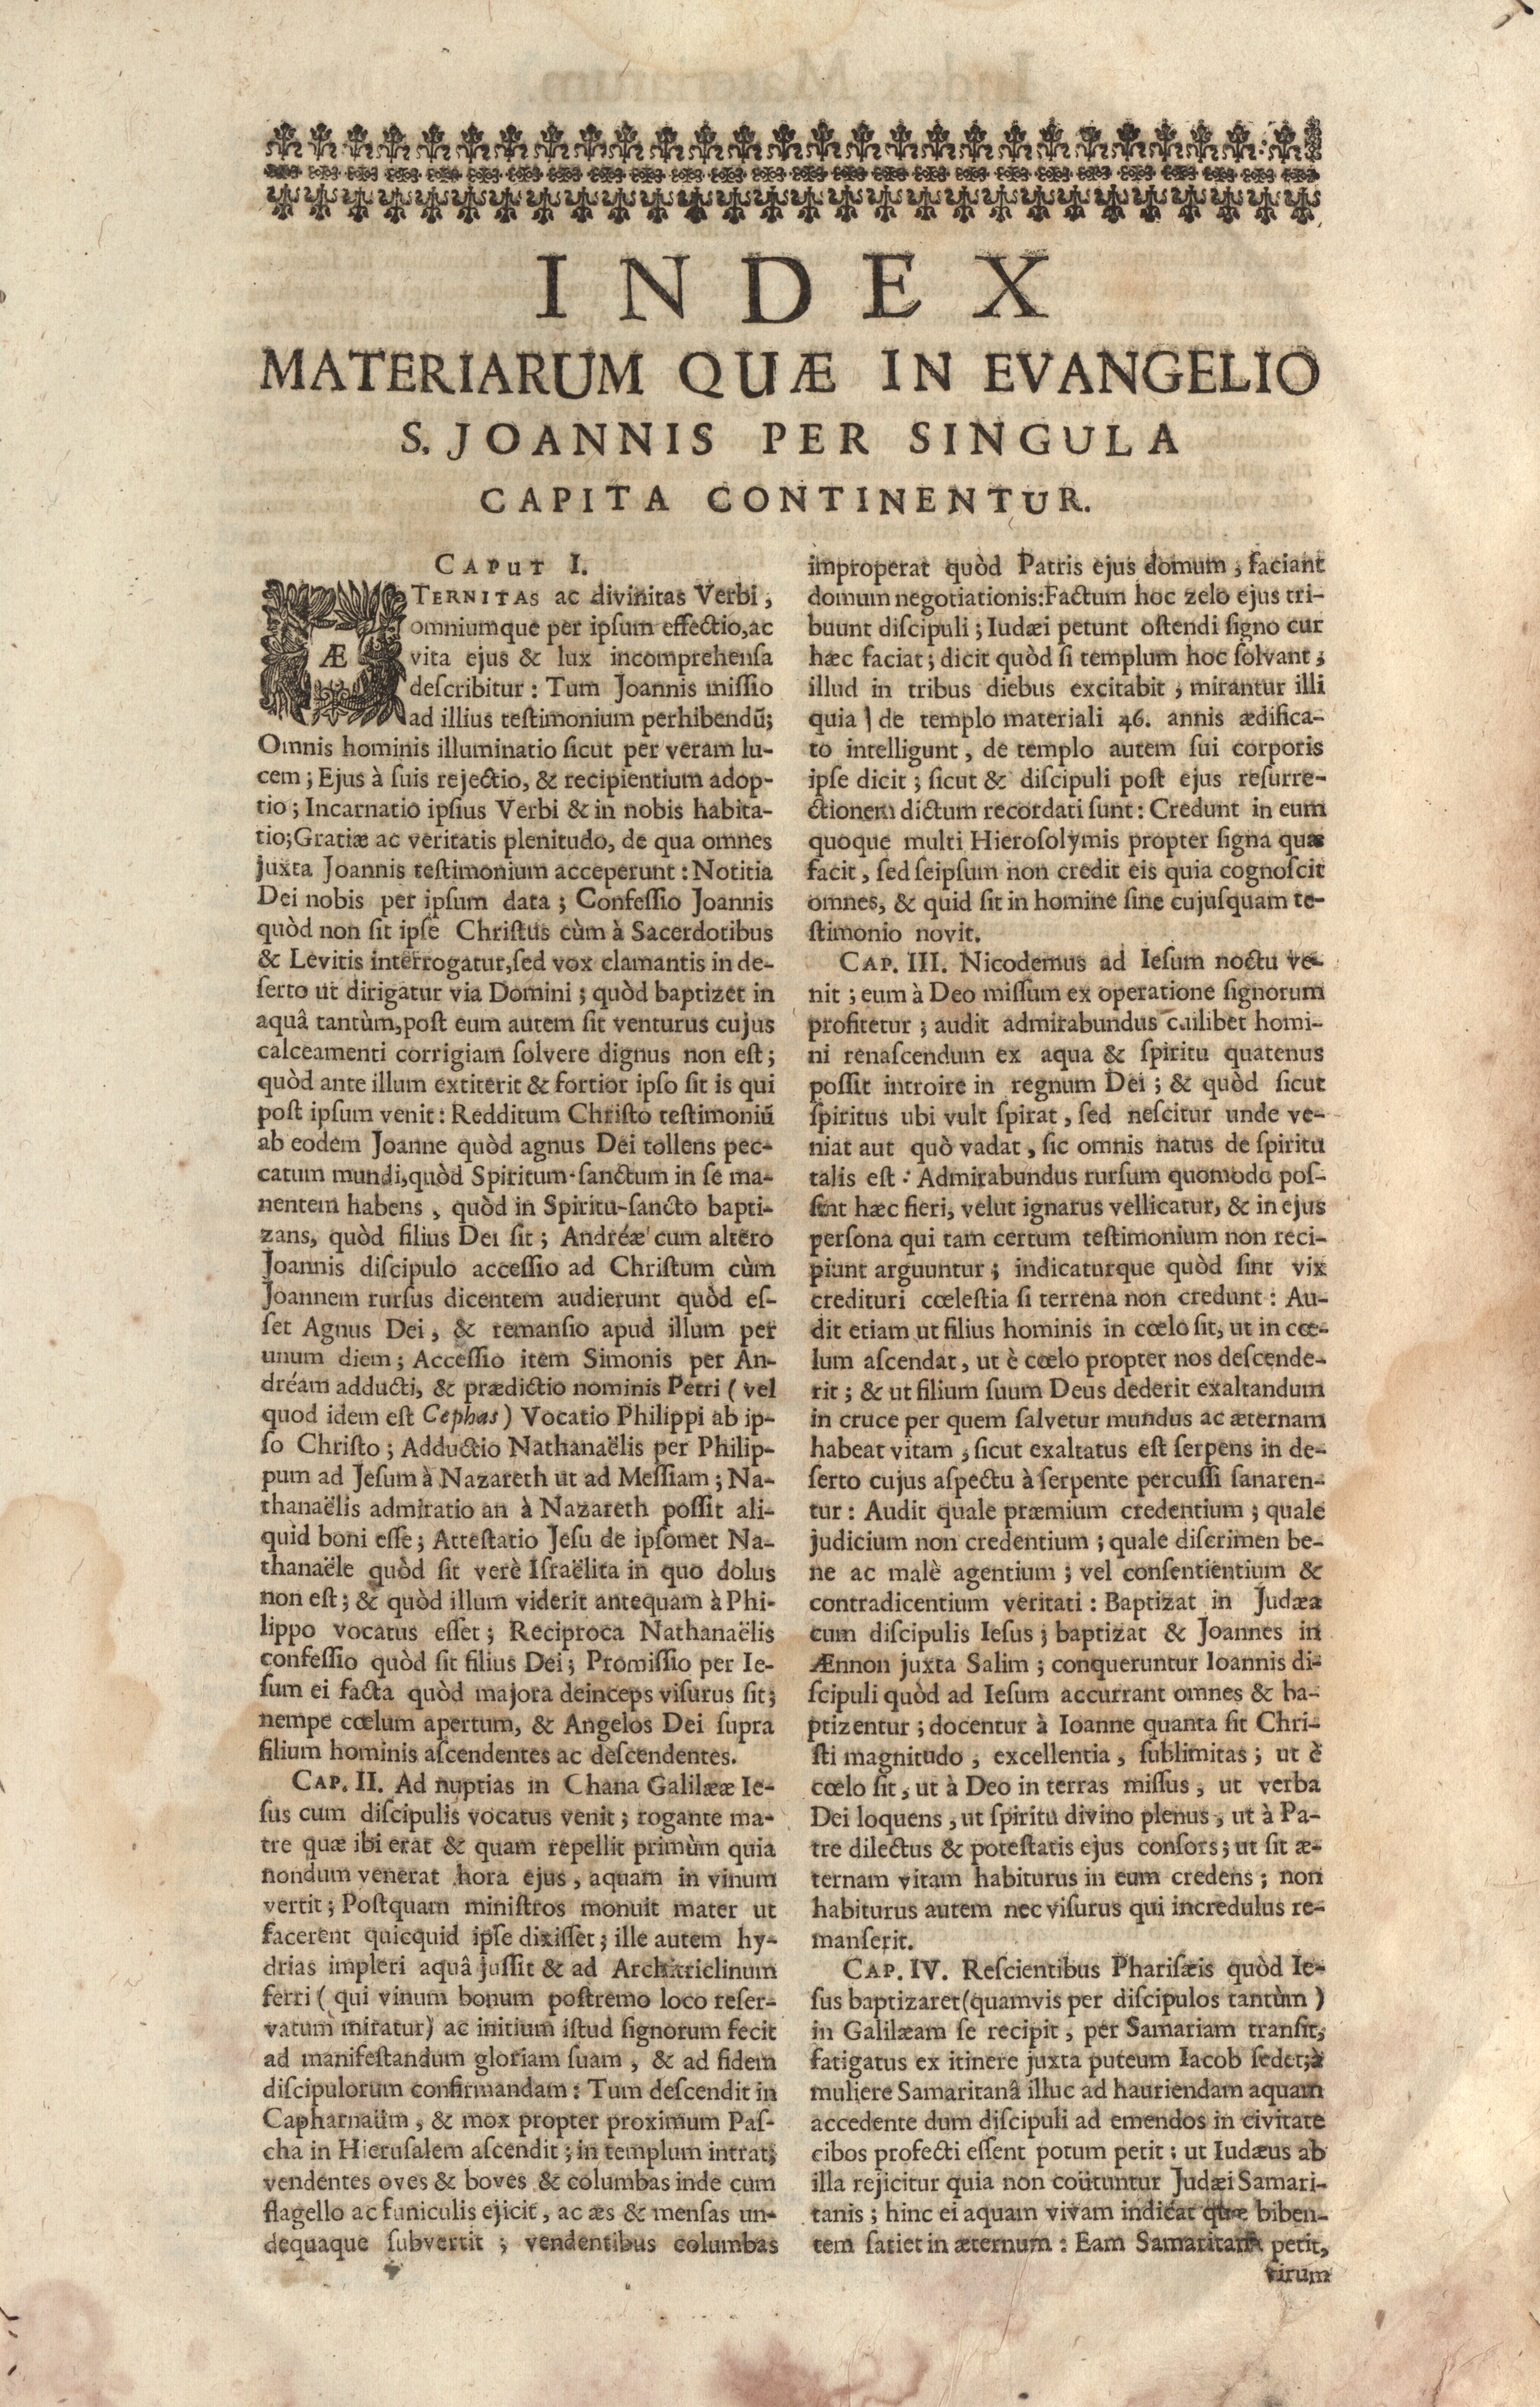 Index materiarum quae in evangelio S. Joannis per singula capita continentur